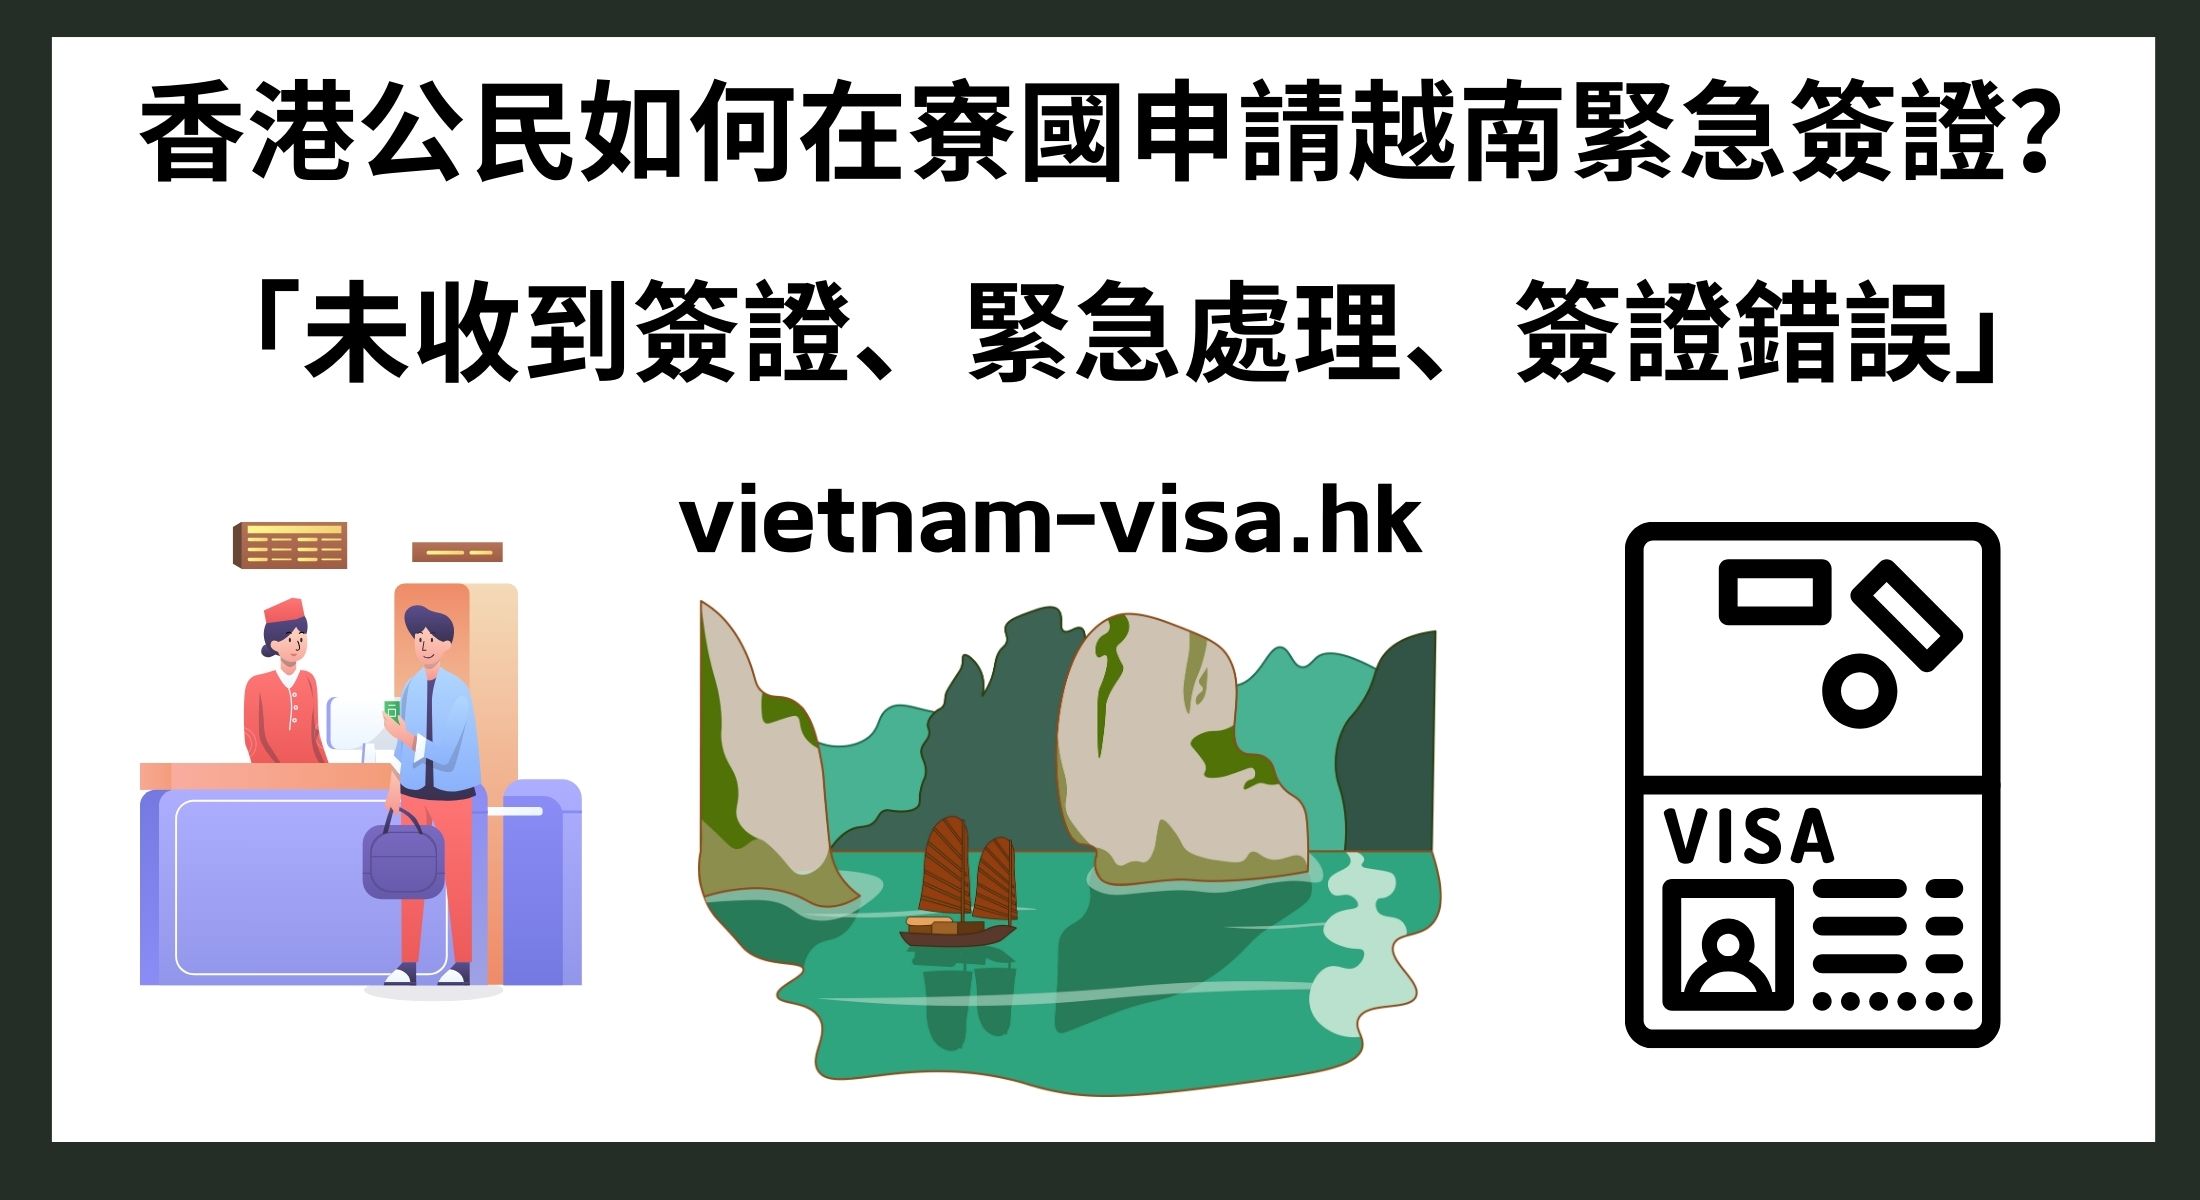 香港公民如何在寮國申請越南緊急簽證？ 「未收到簽證、緊急處理、簽證錯誤」